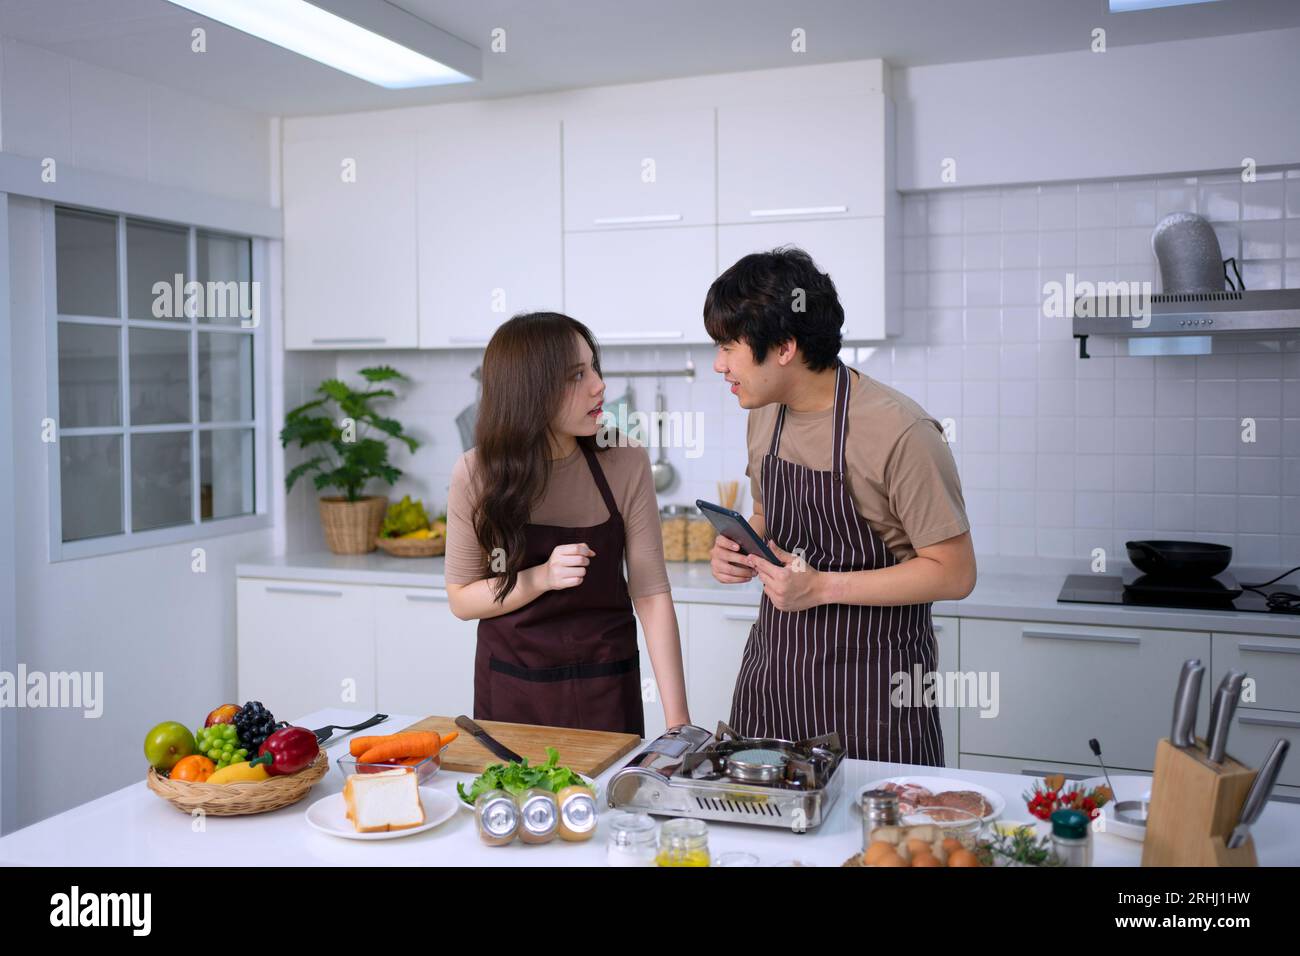 La giovane coppia sta trasmettendo in diretta in cucina. Stile di vita e attività ricreative. Foto Stock